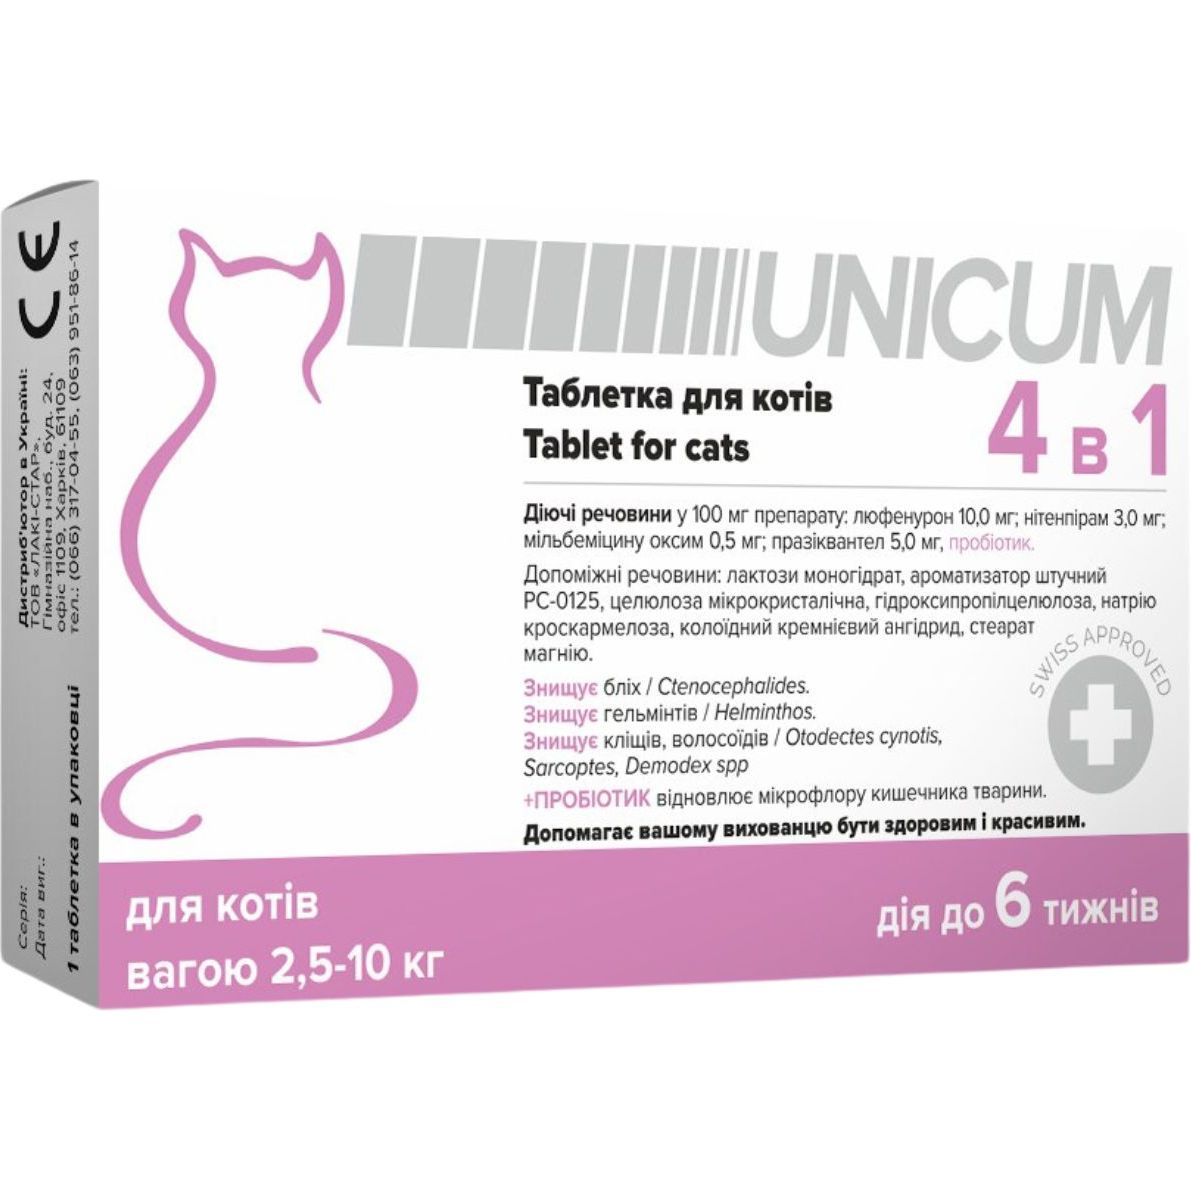 Пігулка для котів Unicum 4 в 1 від бліх, кліщів, гільмінтів, з пробіотіком 2.5-10 кг - фото 1